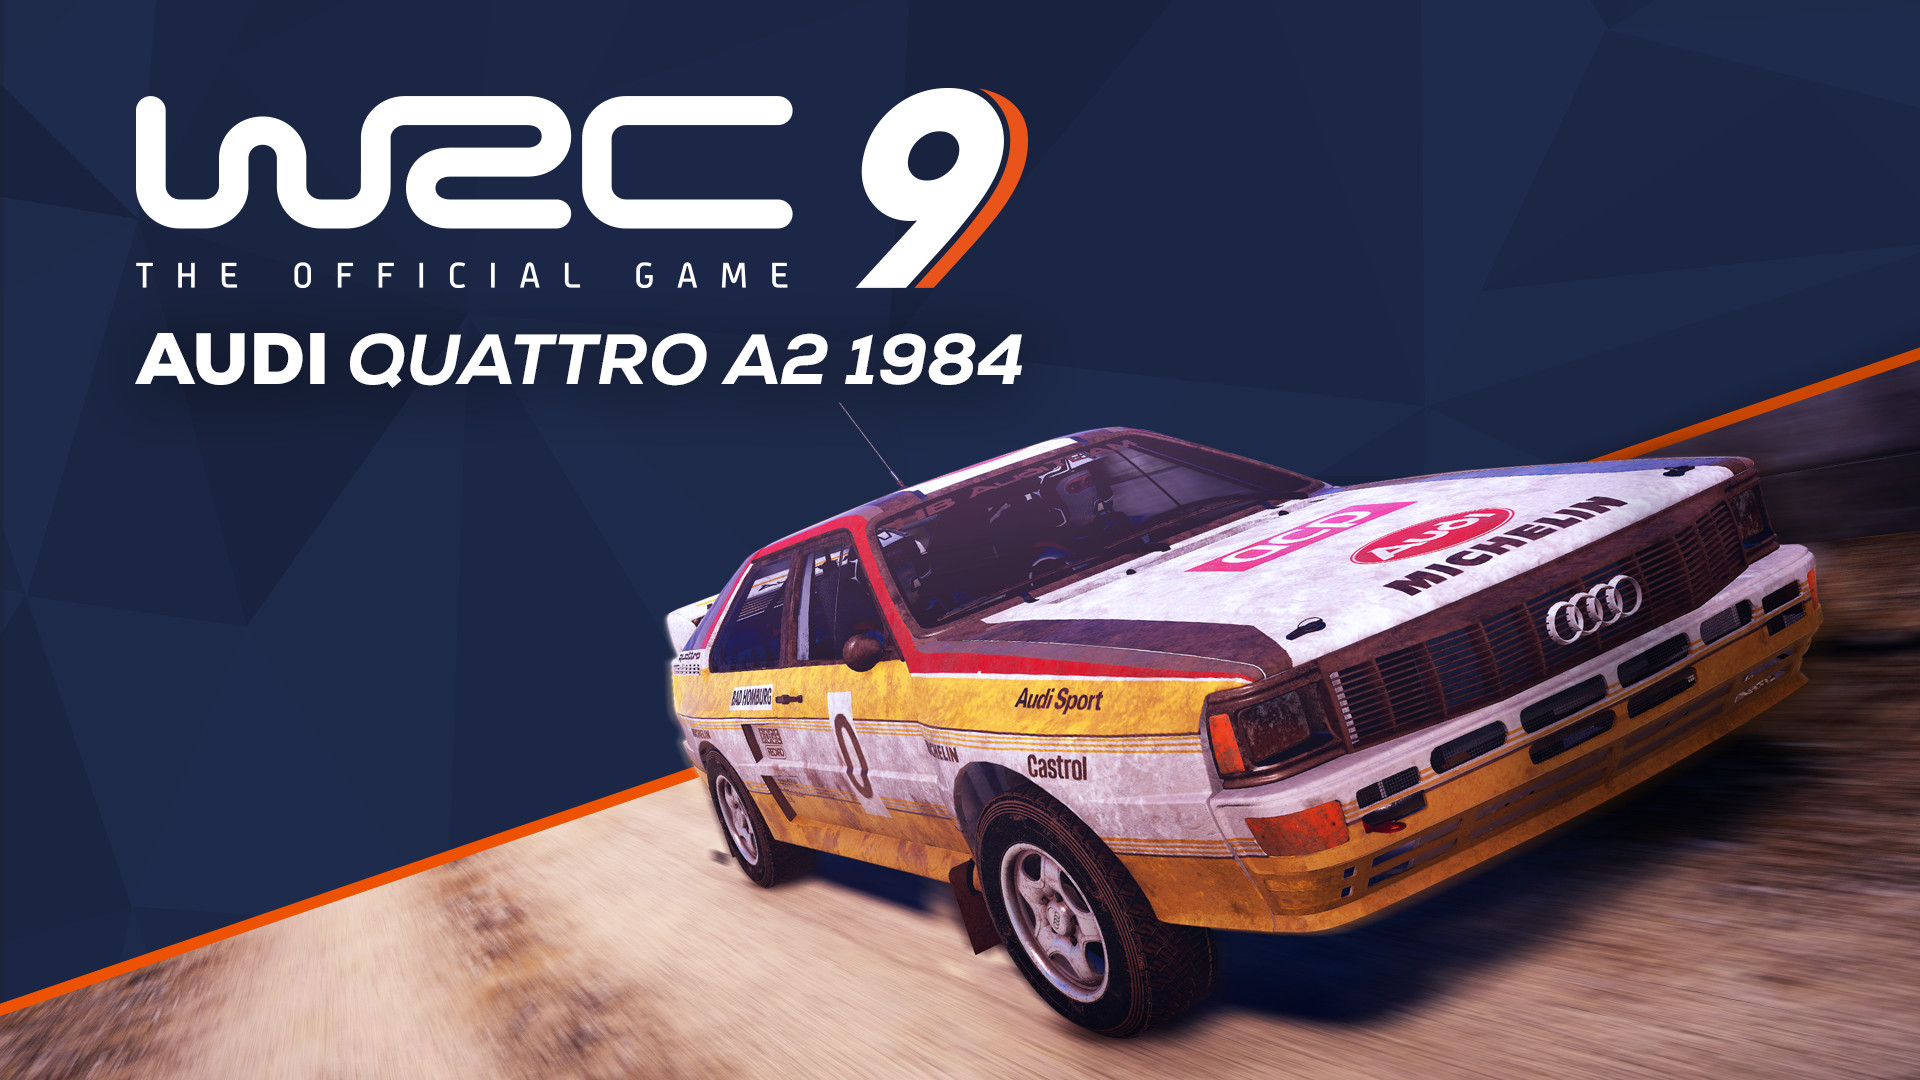 WRC 9 - Audi Quattro A2 1984 DLC Steam CD Key [USD 1.83]